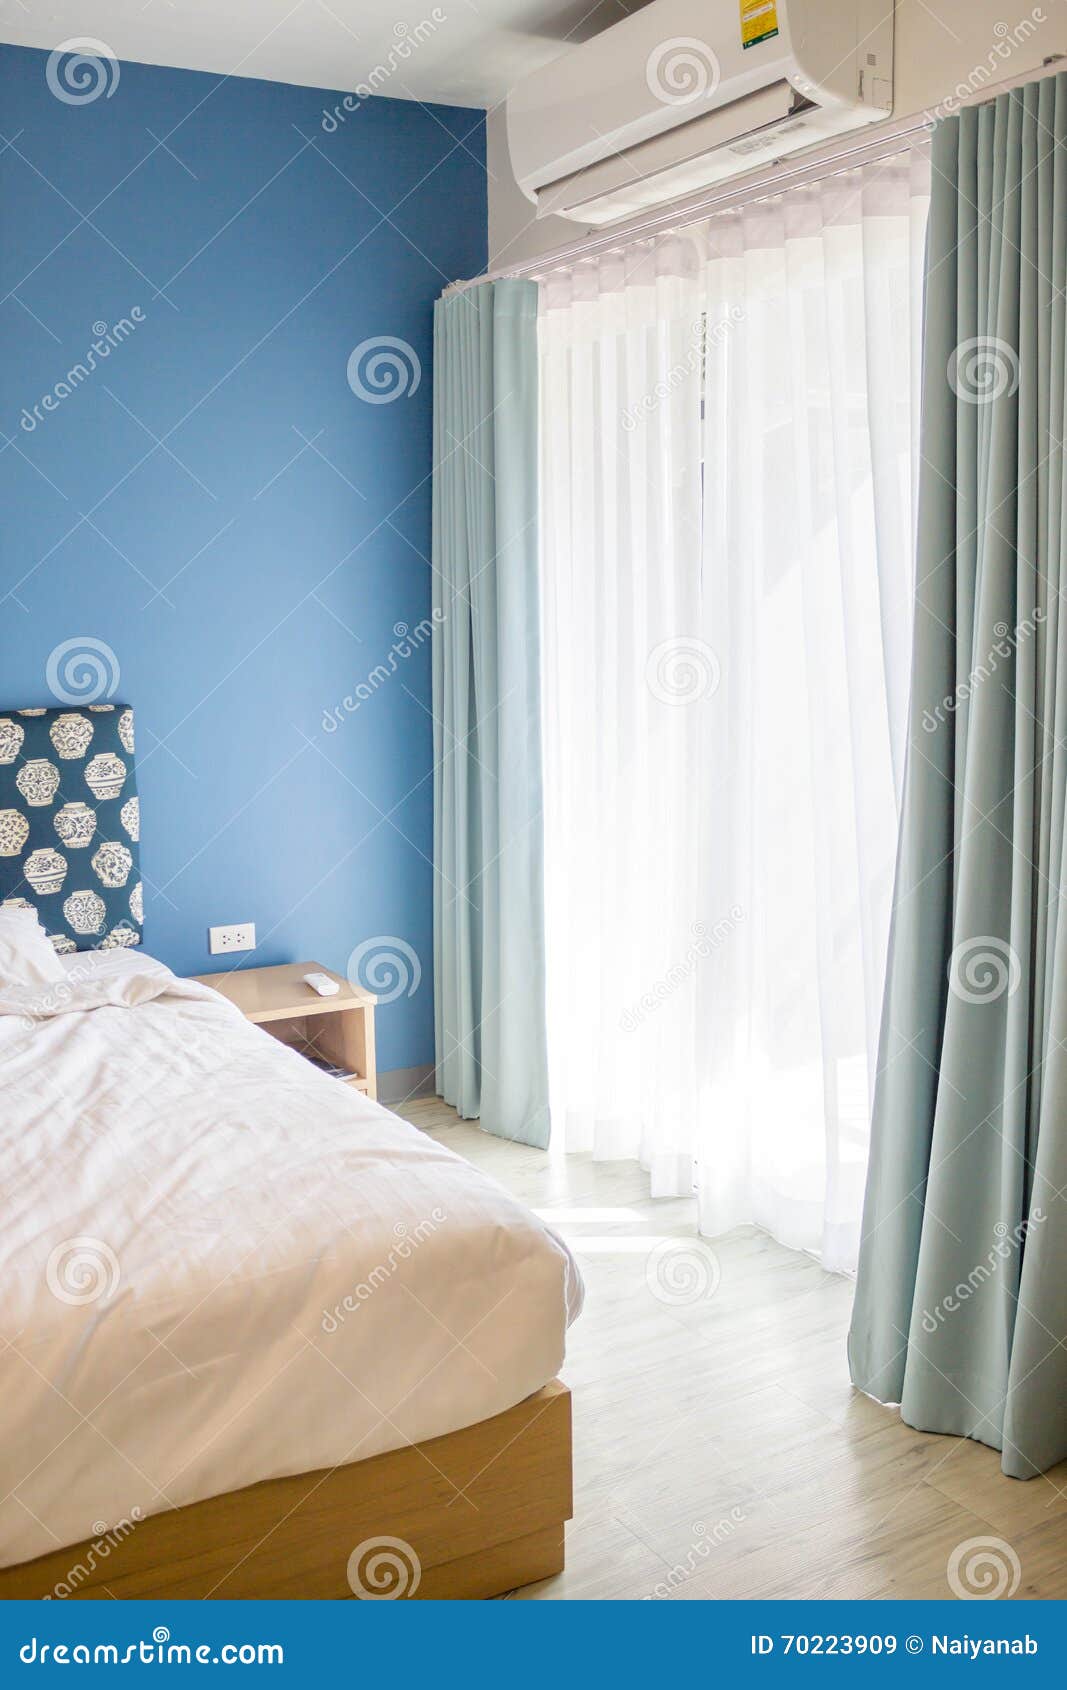 Cortina Blanca Y Azul En Dormitorio Imagen de archivo - Imagen de